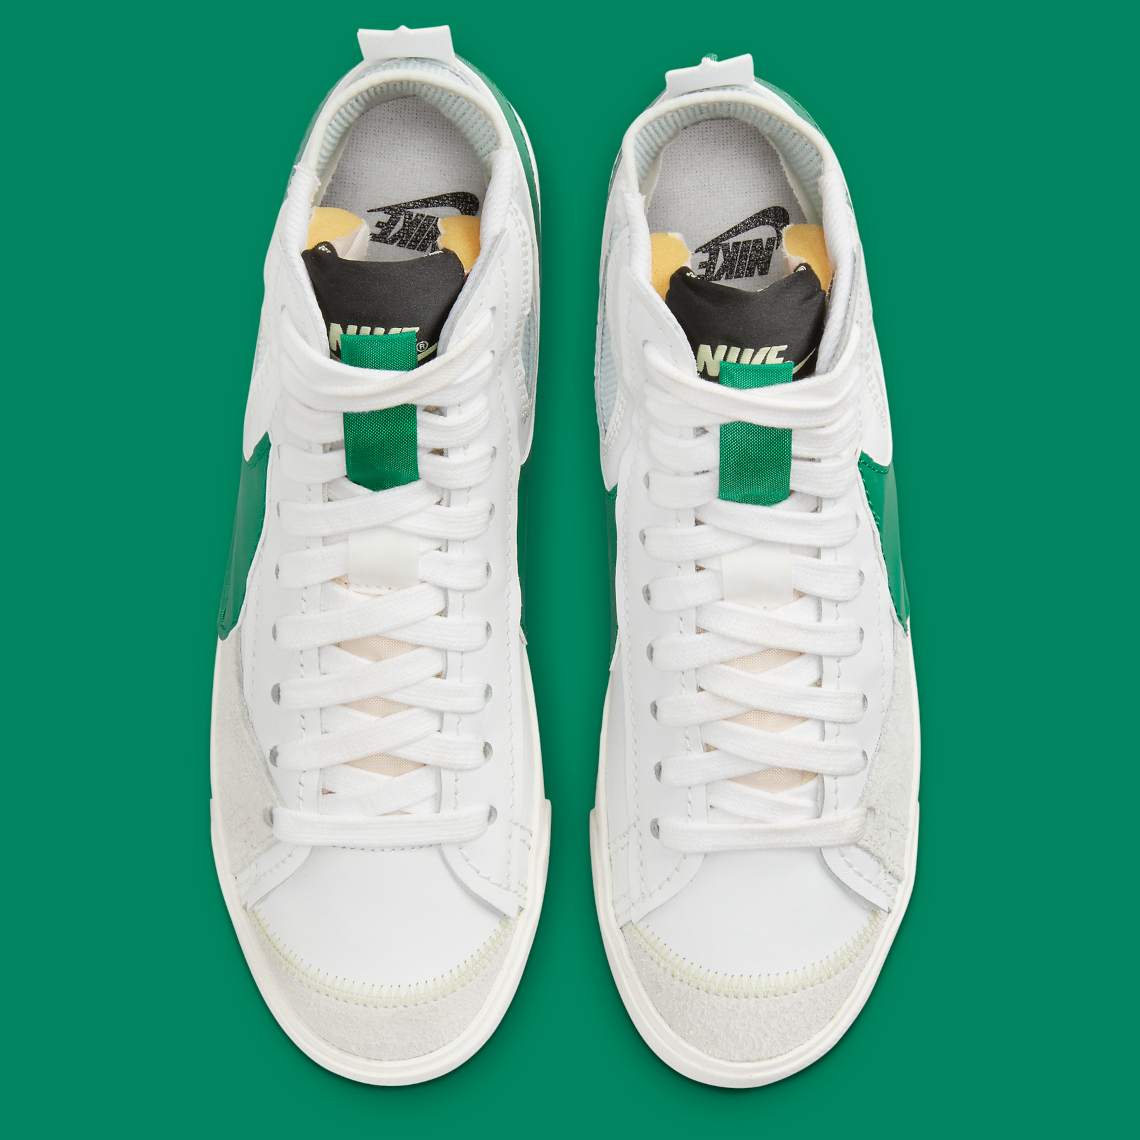 1638556419 892 El Nike Blazer Mid Jumbo aparece en blanco verde